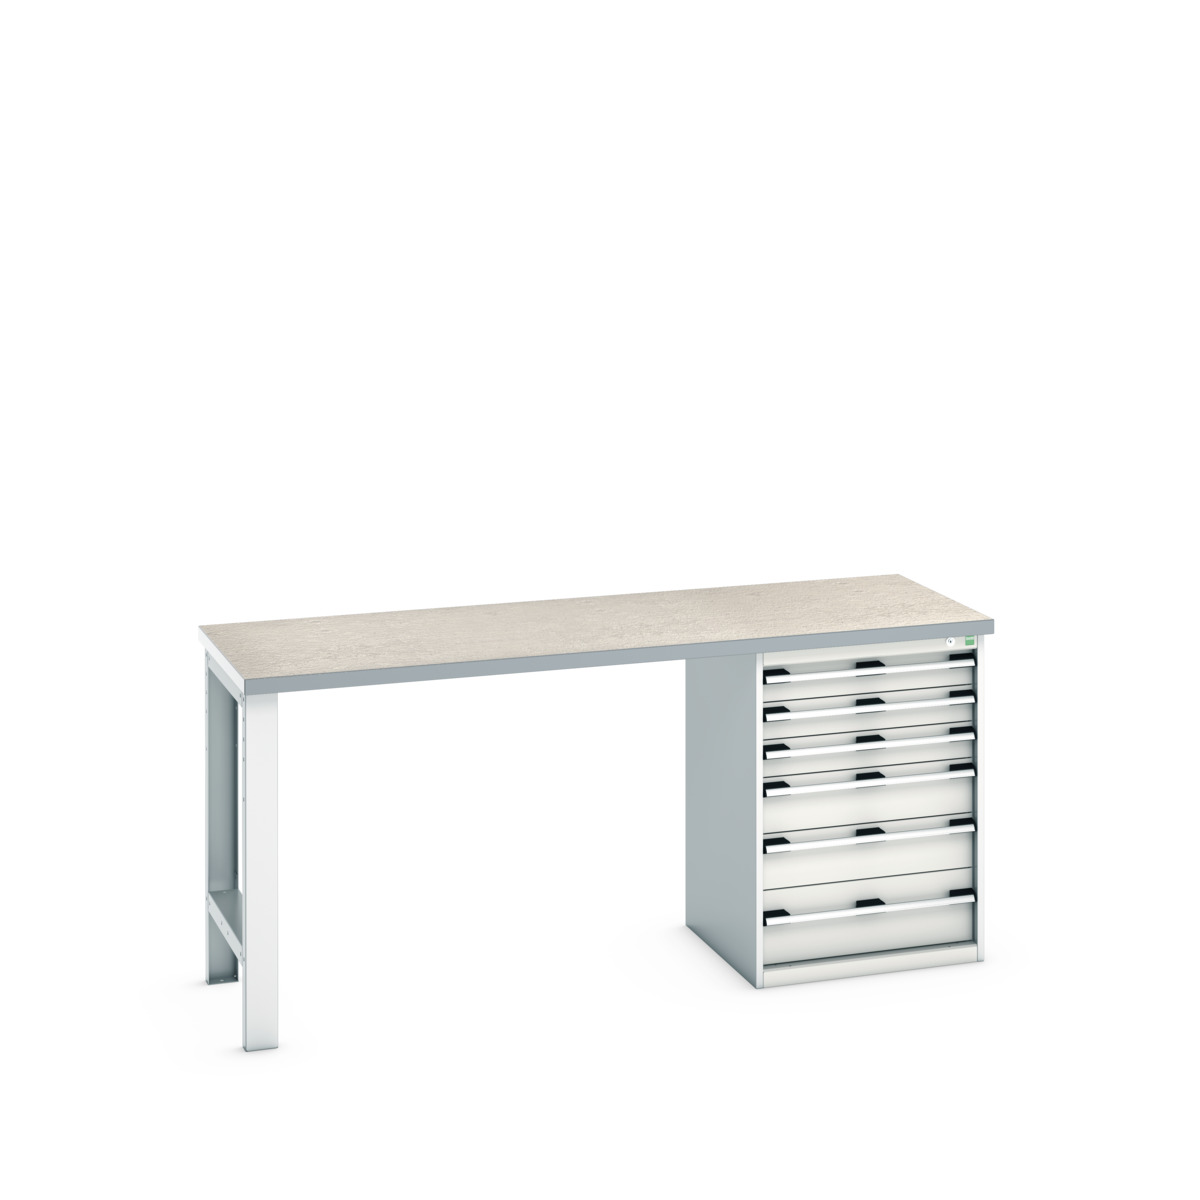 41003495.16V - cubio pedestal bench (lino)